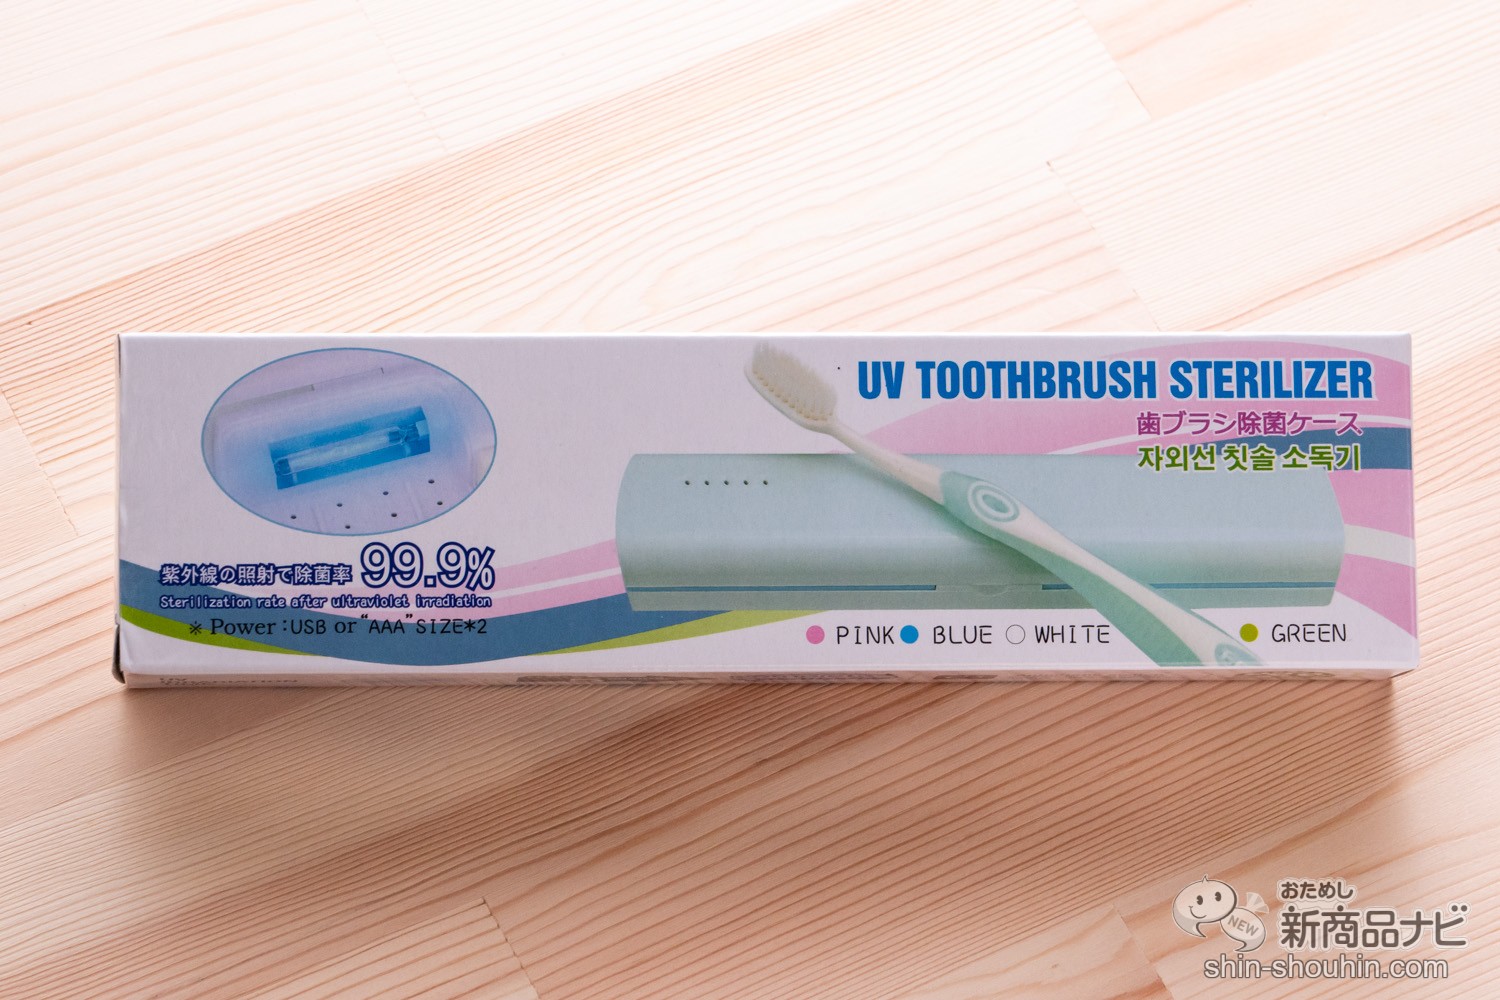 285円 独創的 UV除菌歯ブラシケース 旅行 携帯 USB or 乾電池 輸入業者 丸隆